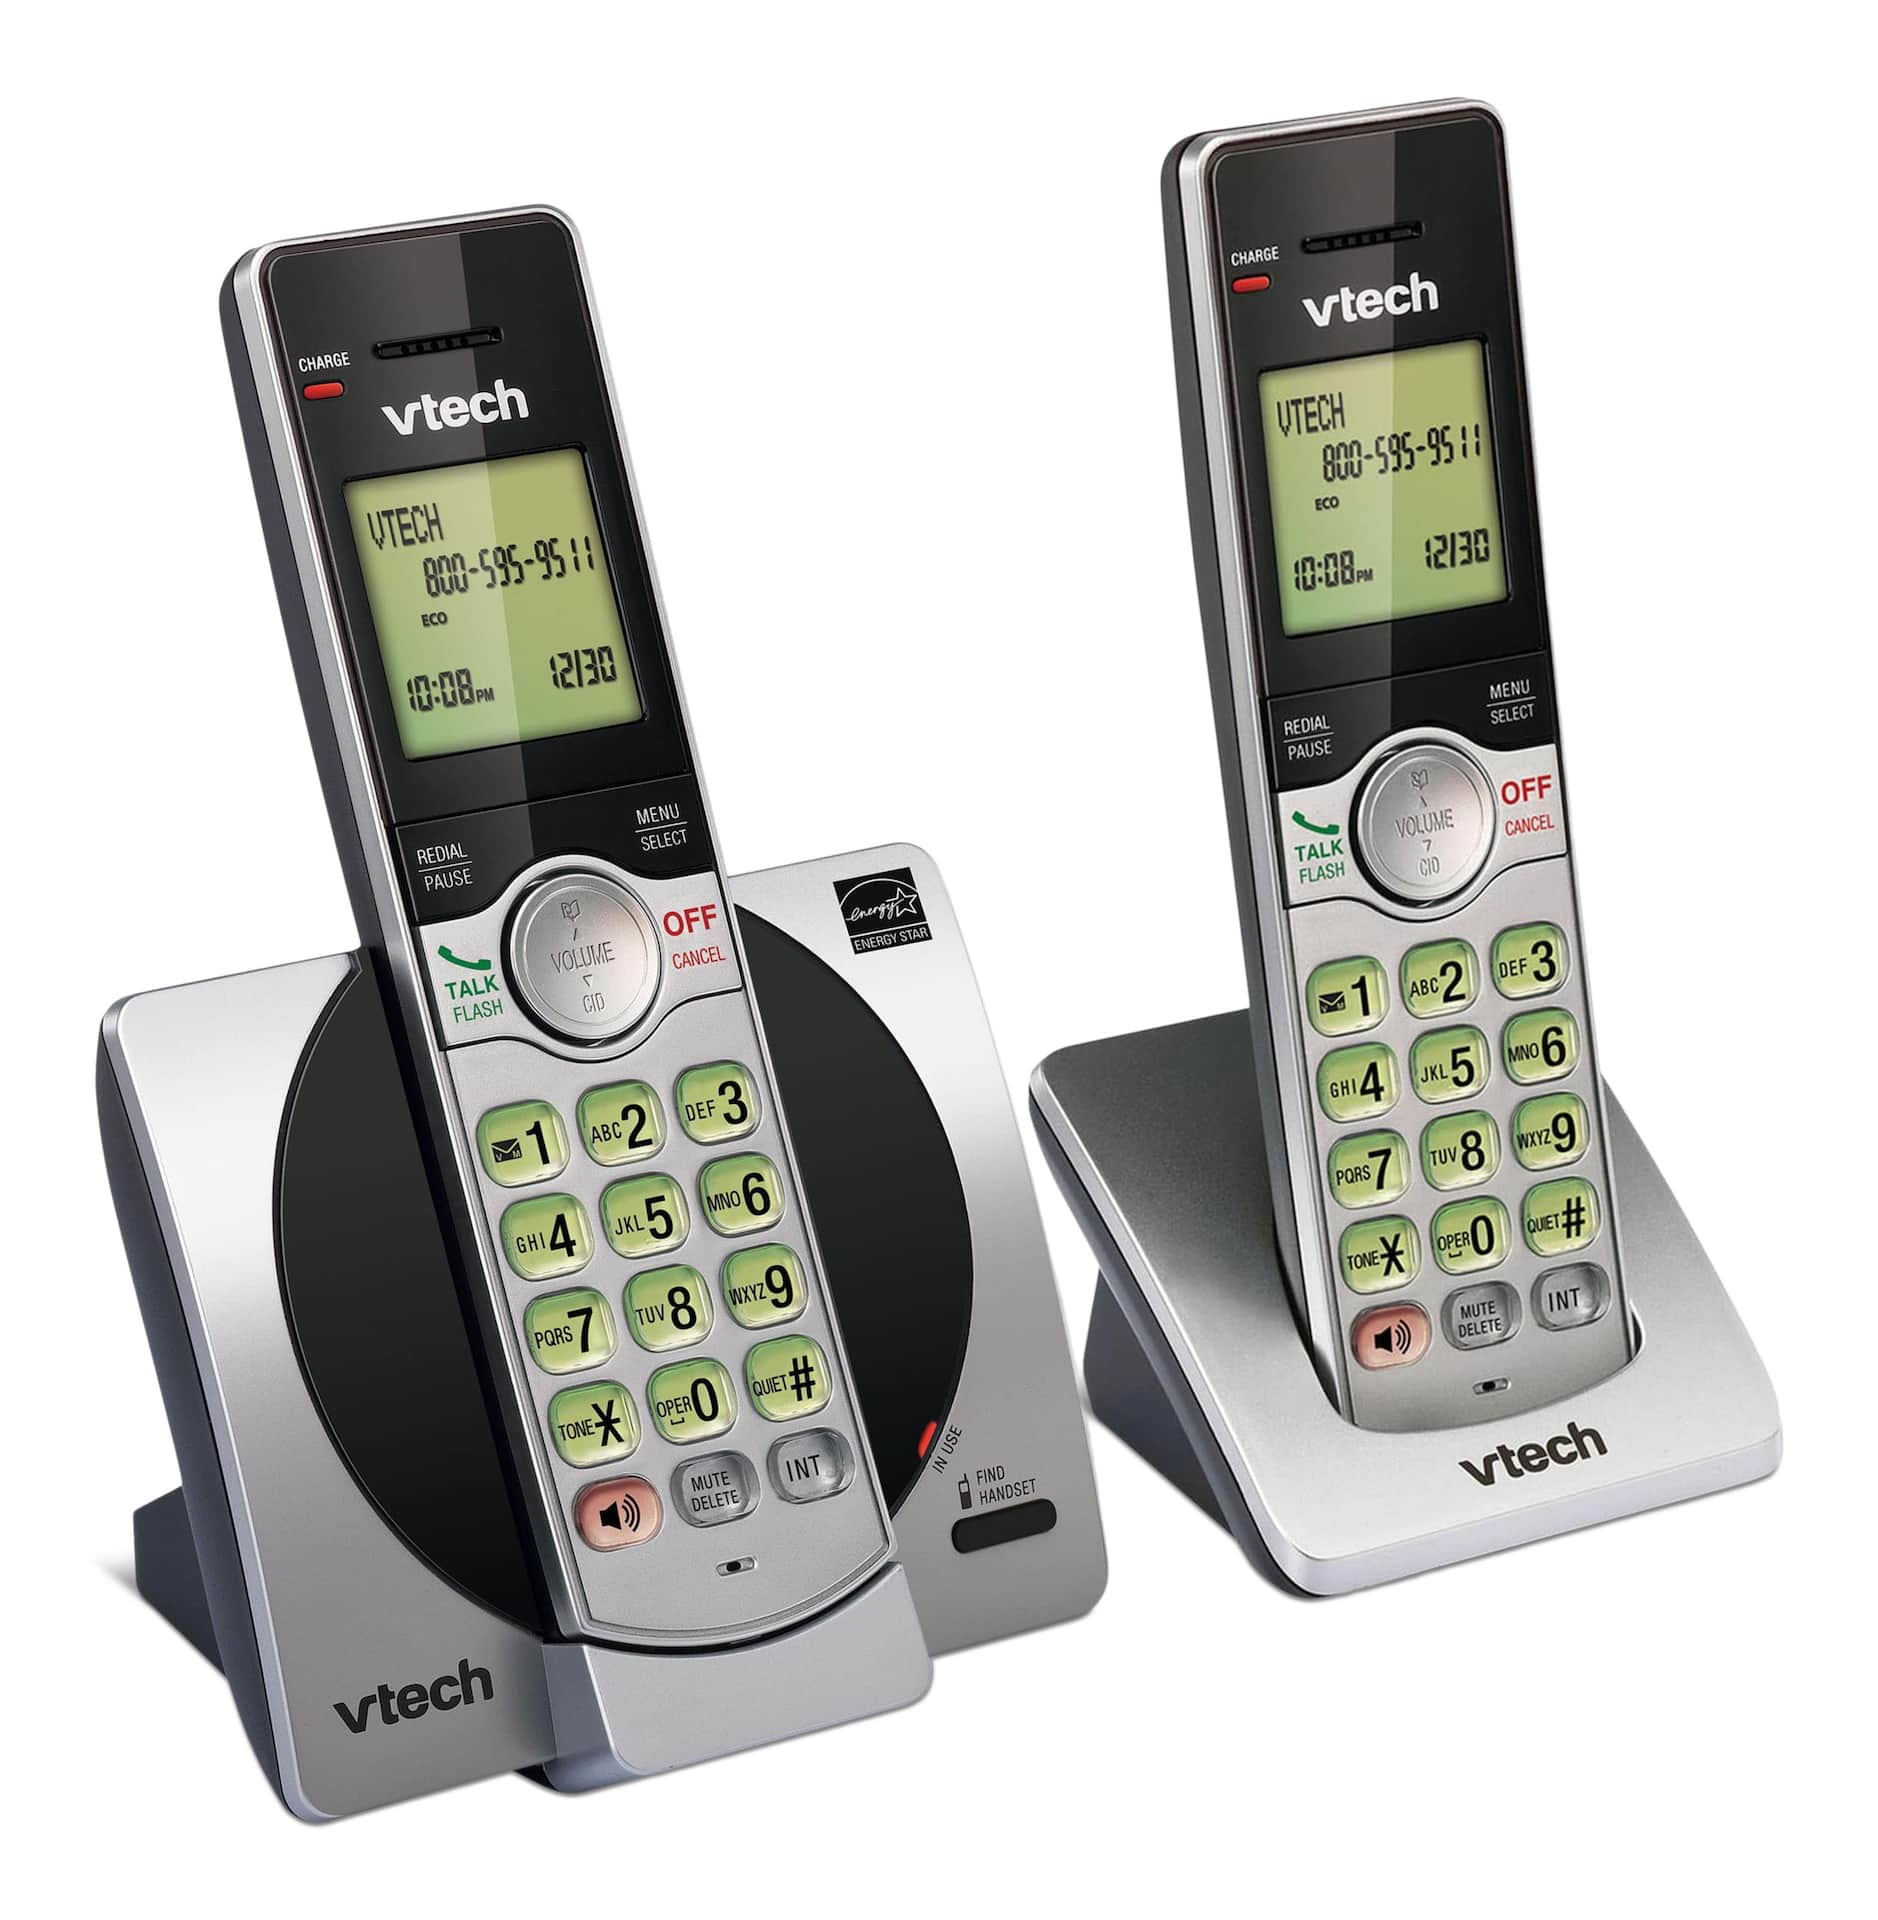 Téléphone filaire/sans fil VTech DECT 6.0 avec répondeur numérique,  identification de l'appelant et appel en attente, argent/noir